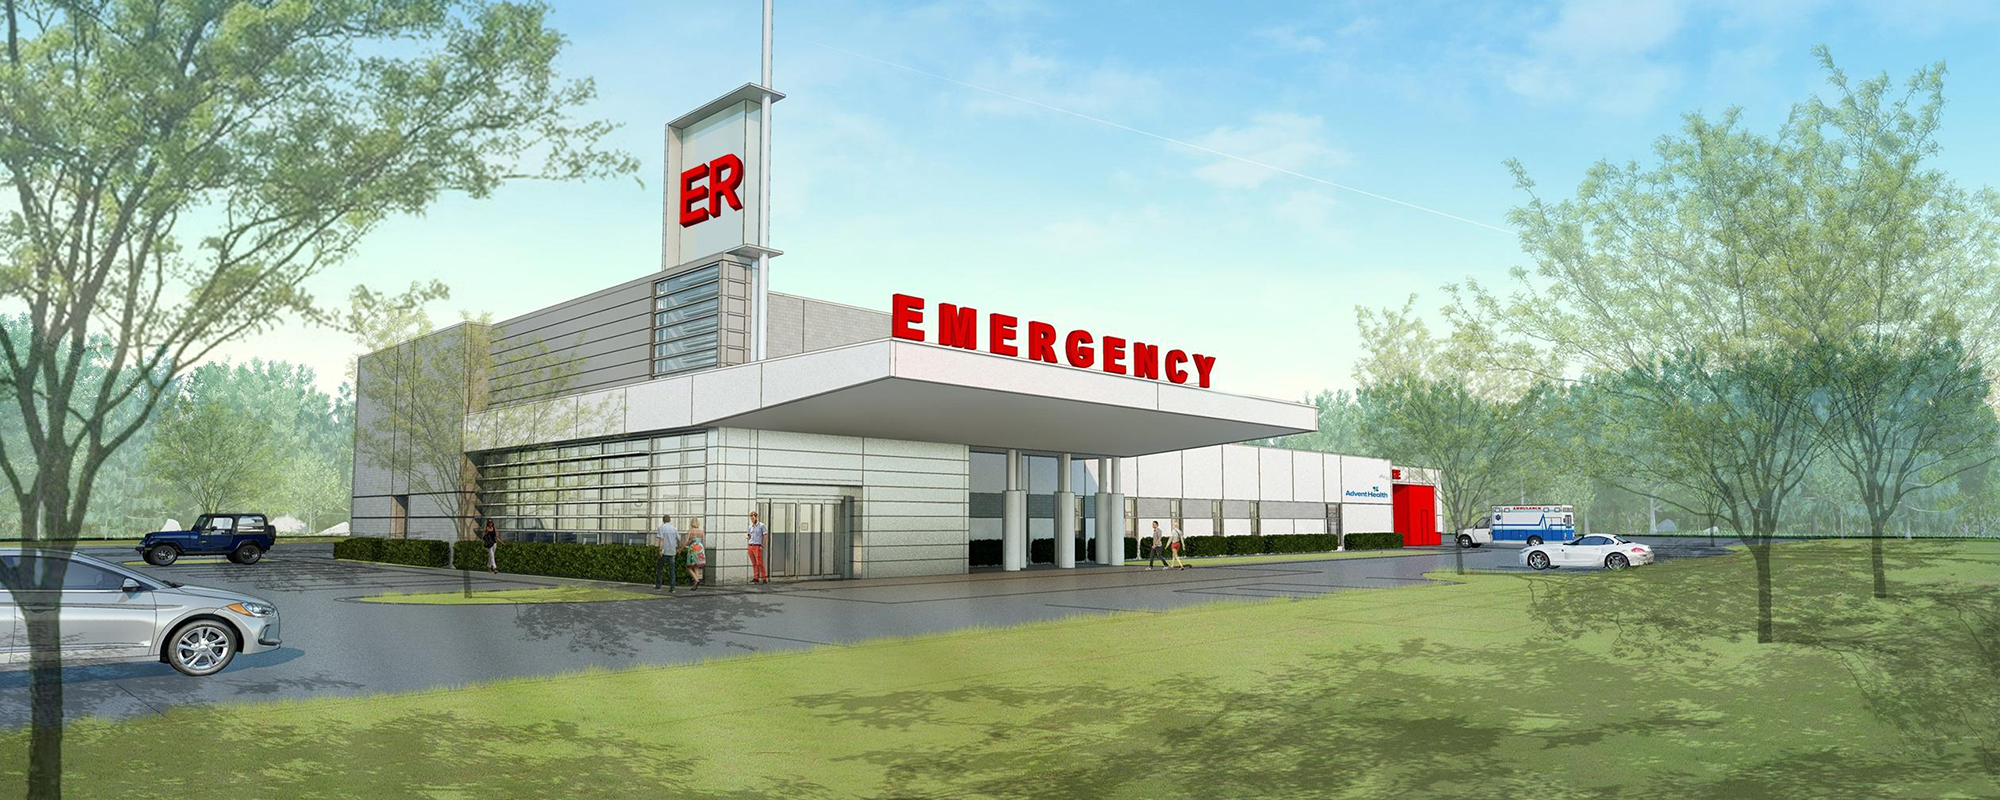 emergency department rendering